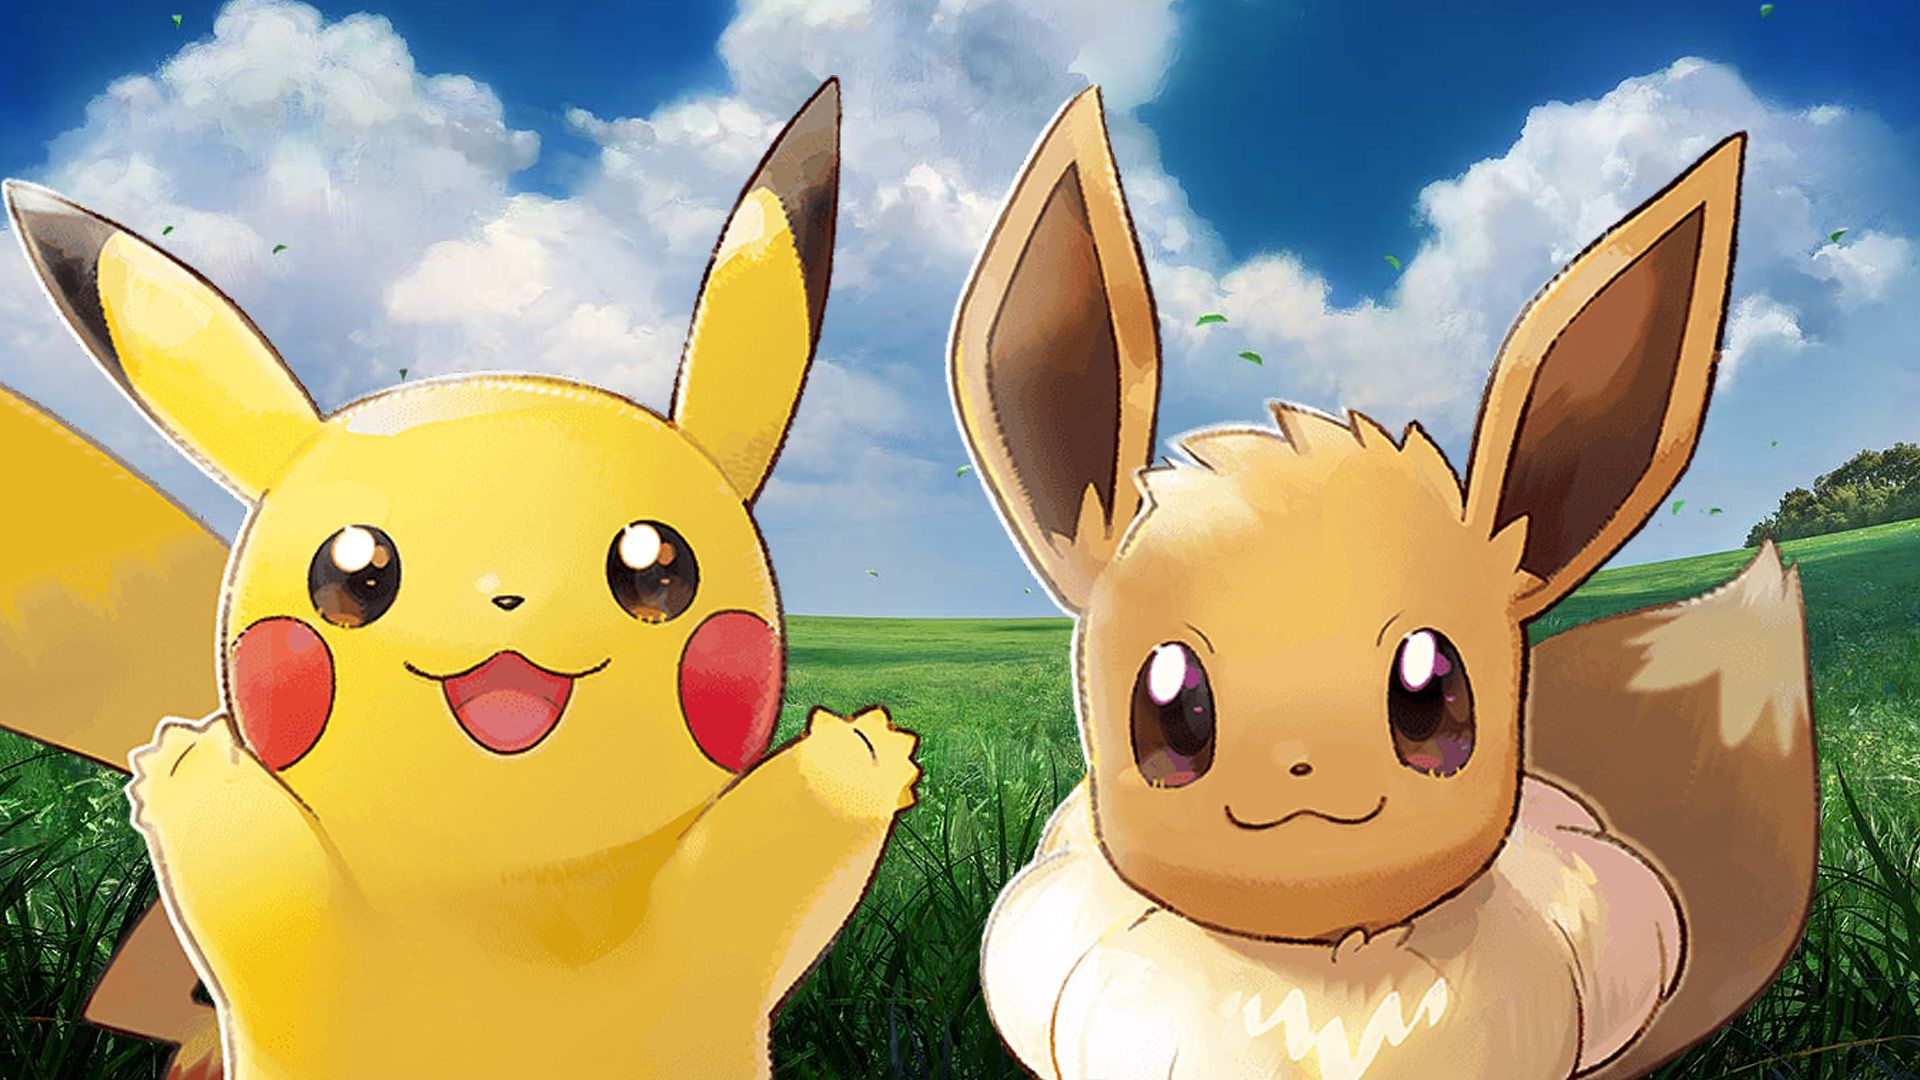 Pokémon: Let's Go, Pikachu Eevee Review